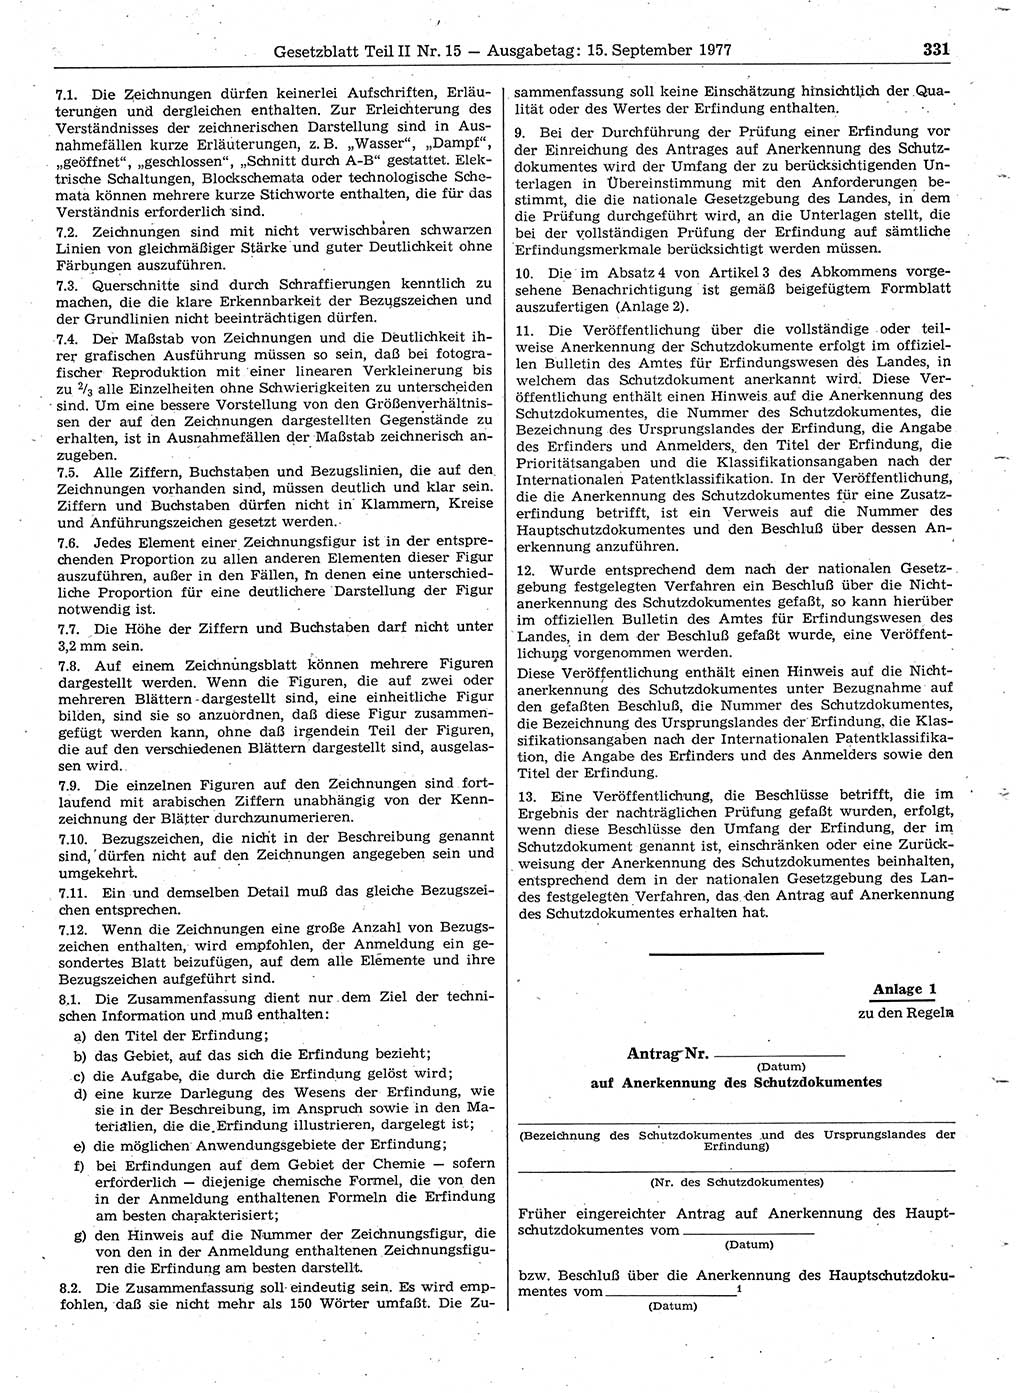 Gesetzblatt (GBl.) der Deutschen Demokratischen Republik (DDR) Teil ⅠⅠ 1977, Seite 331 (GBl. DDR ⅠⅠ 1977, S. 331)